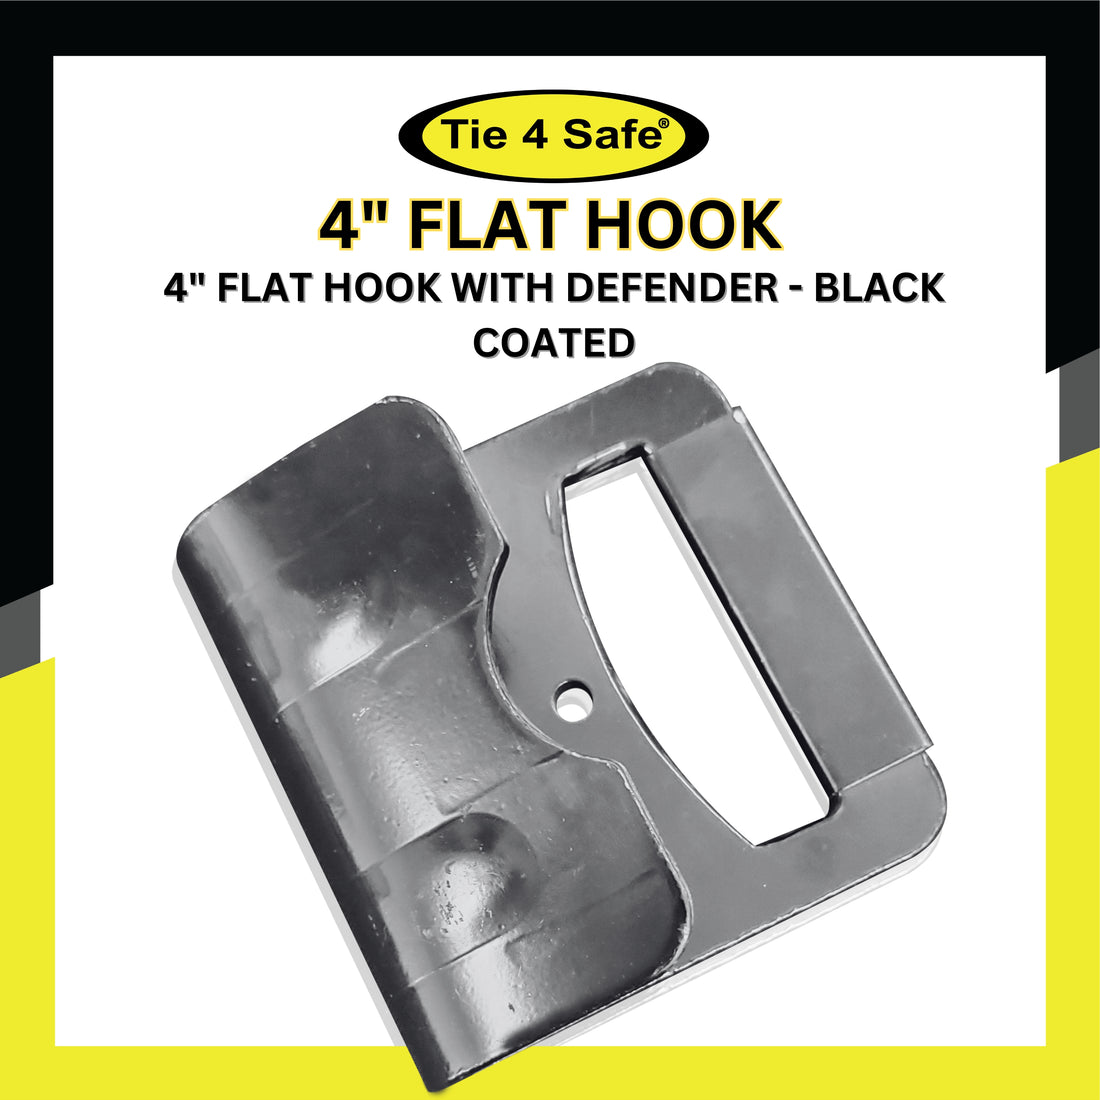 4 Flat Hook With Defender – Tie 4 Safe